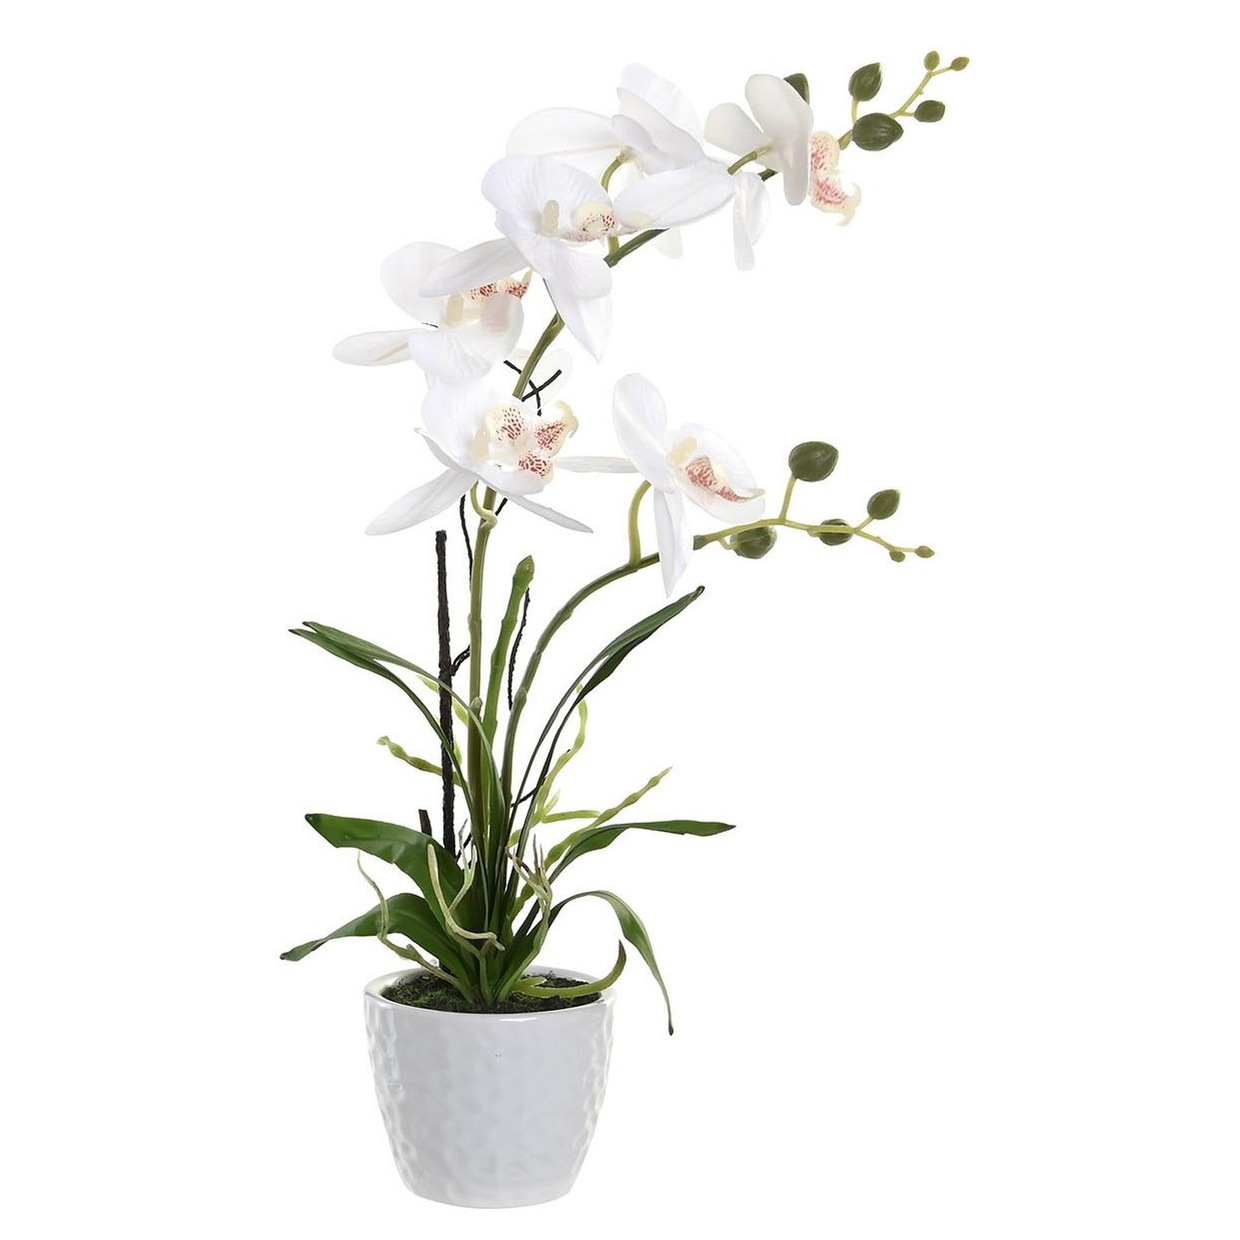 Items Orchidee bloemen kunstplant in witte bloempot witte bloemen H45 cm